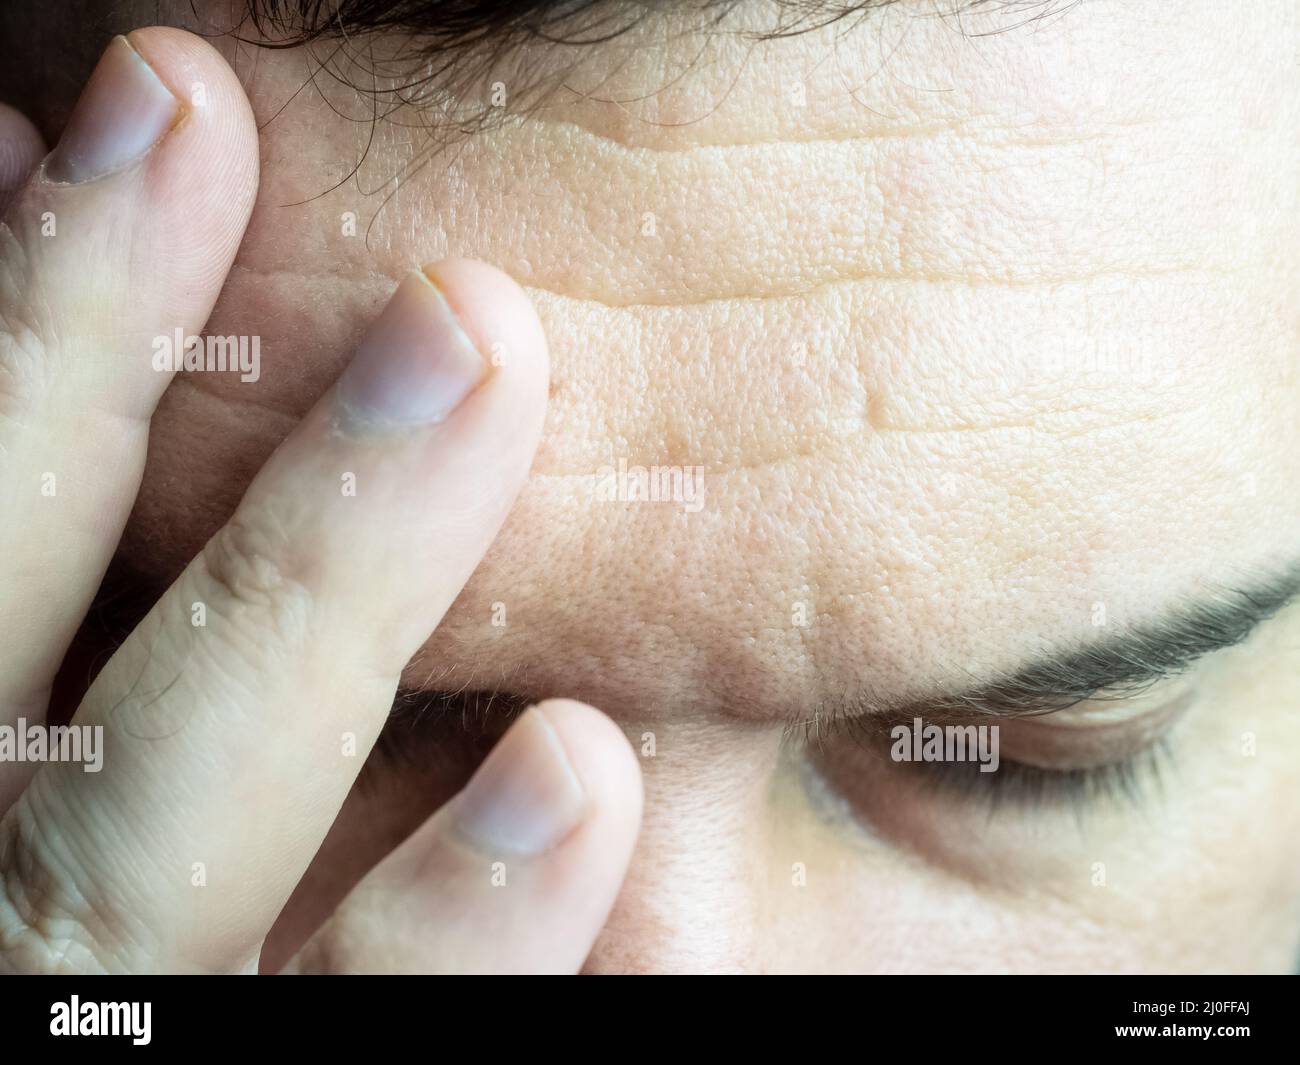 Ein Nahaufnahme-Foto von einem Mann, der seine Finger auf die Stirn drückt, seine Stirn faltert und seine Augen schließt, was Kopfschmerzen zeigt Stockfoto